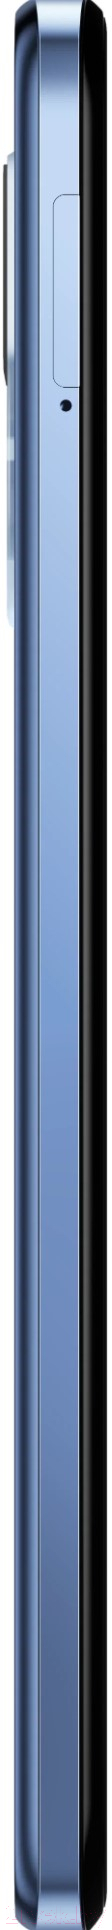 Смартфон TCL 30 5G T776H1 4GB/128GB (светло-голубой)